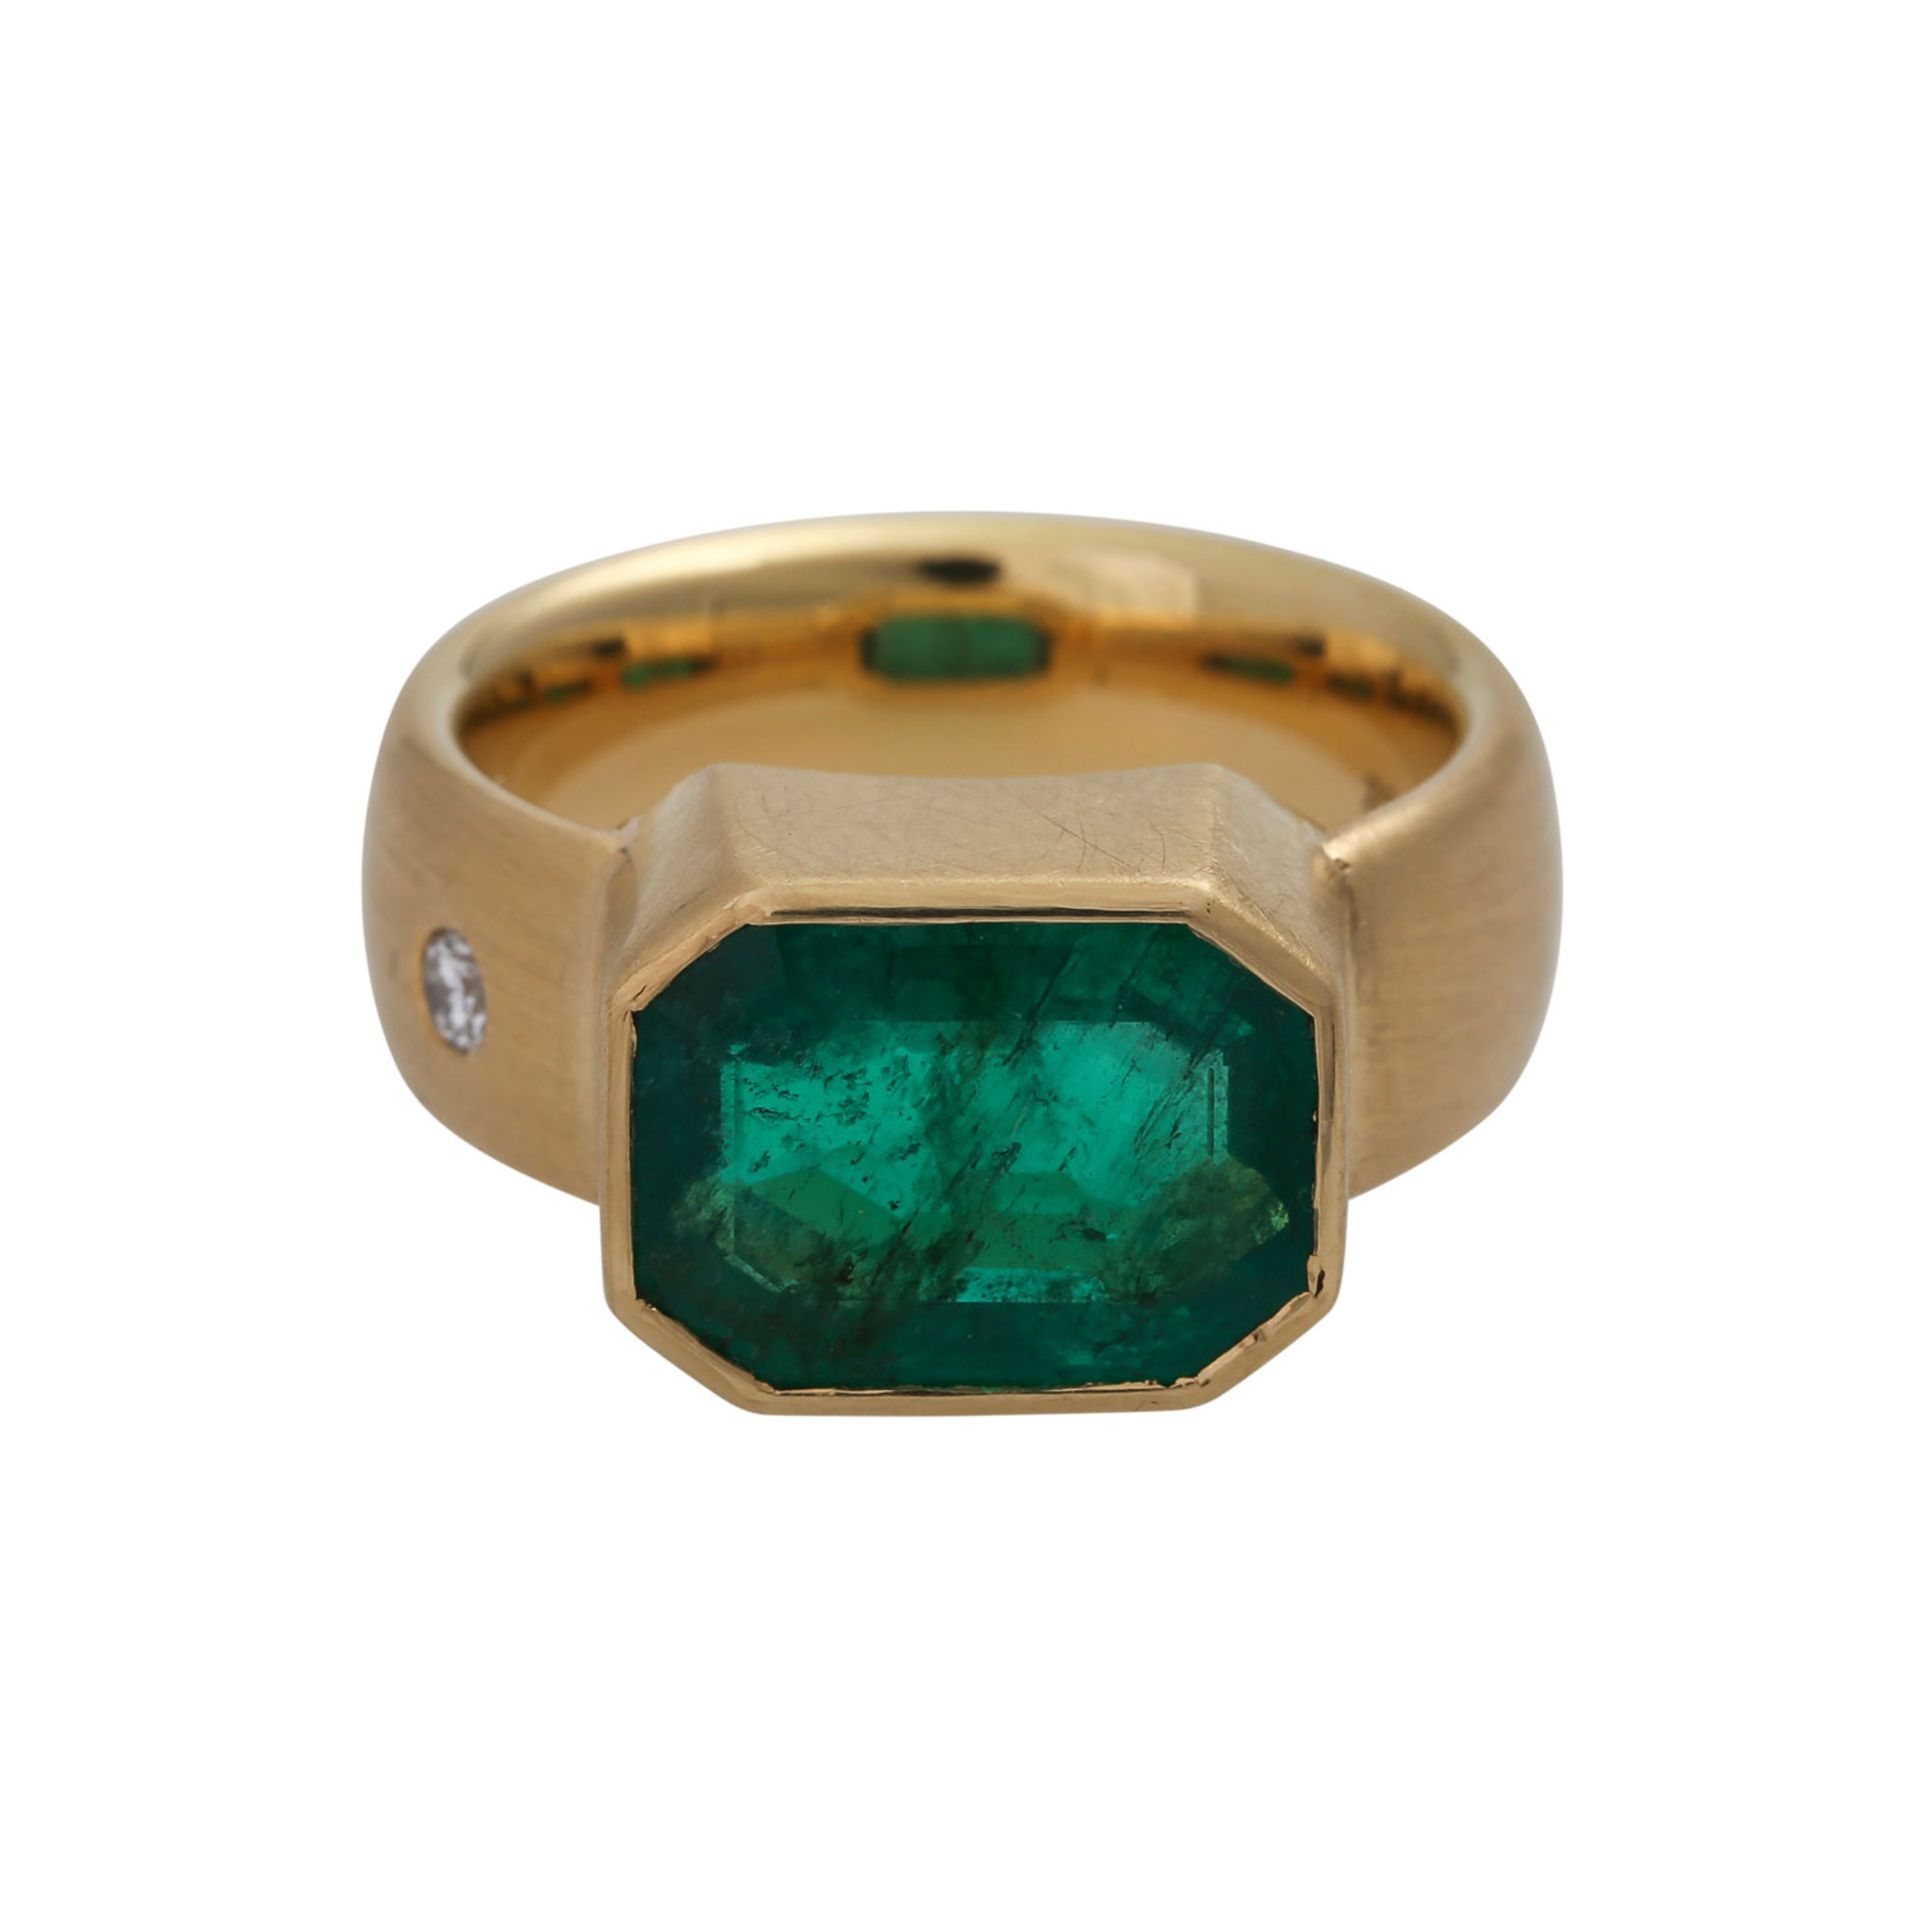 Ring mit Smaragd ca. 4,6 ct,kl. Brillant ca. 0,05 ct von guter bis sehr guter Farbe u. Reinheit.